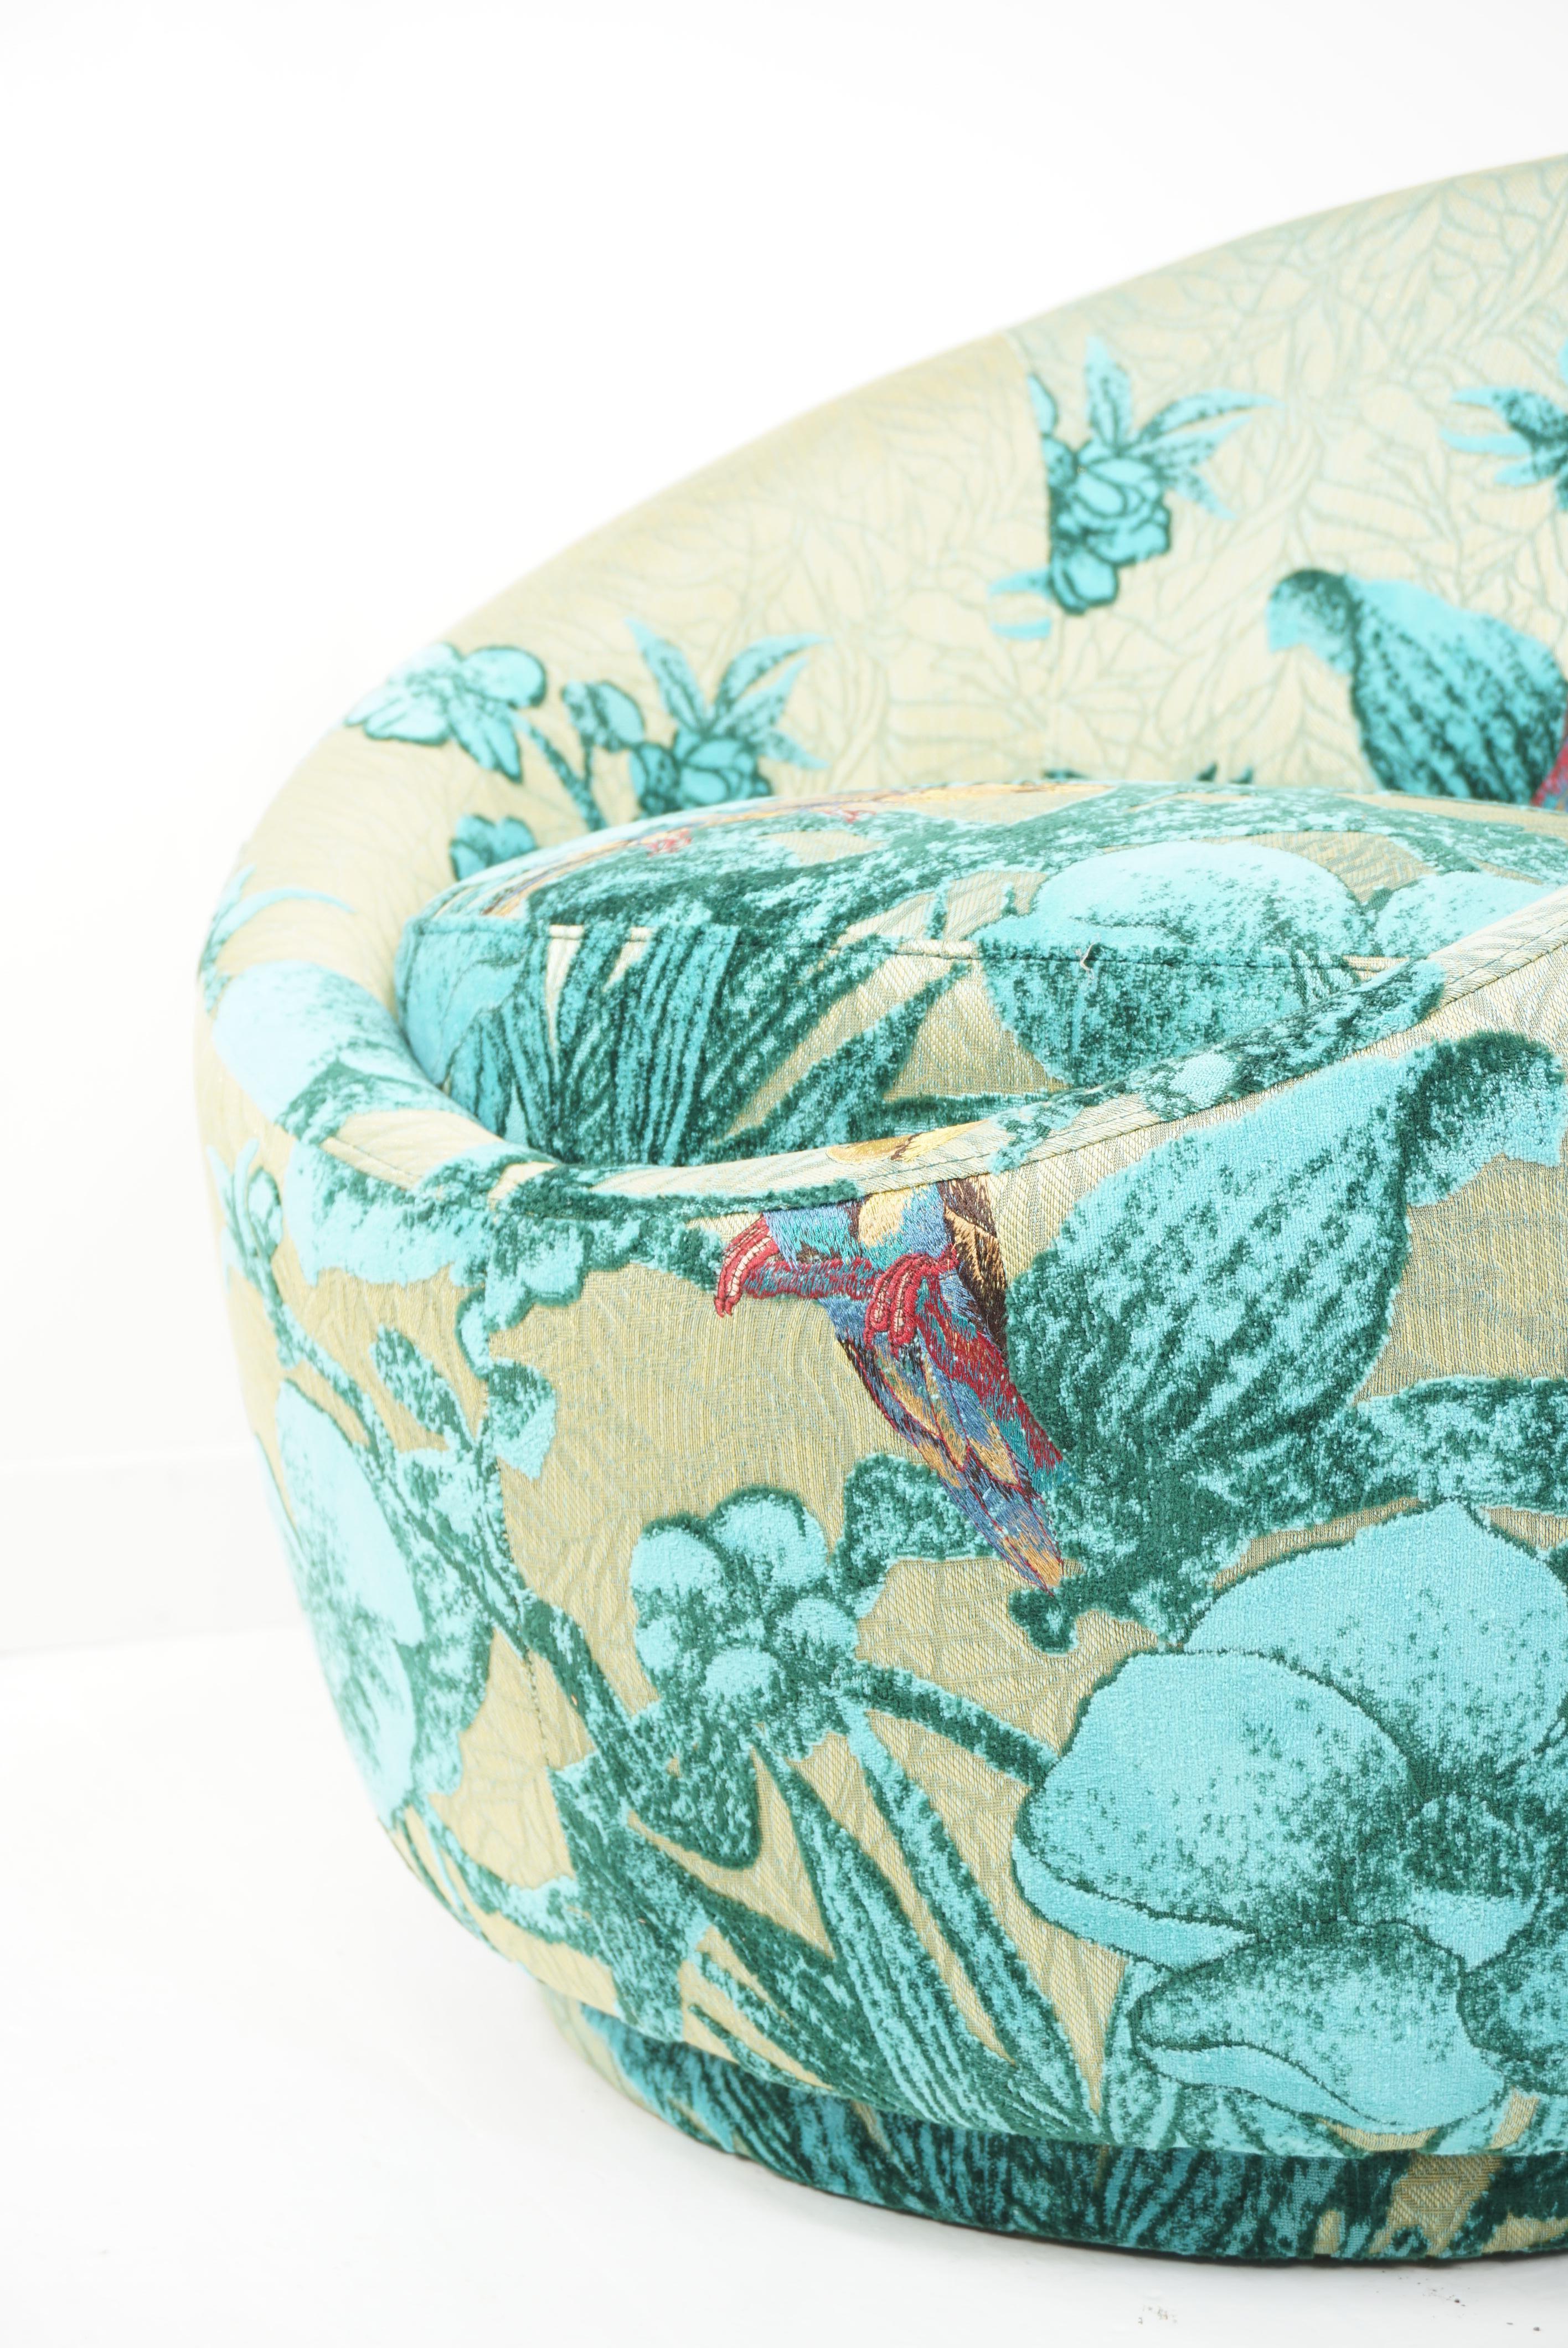 Fauteuil ovoïde en velours et tissu turquoise et vert avec perroquets et touche d'or, pivotant et confortable dans le style Art Déco.